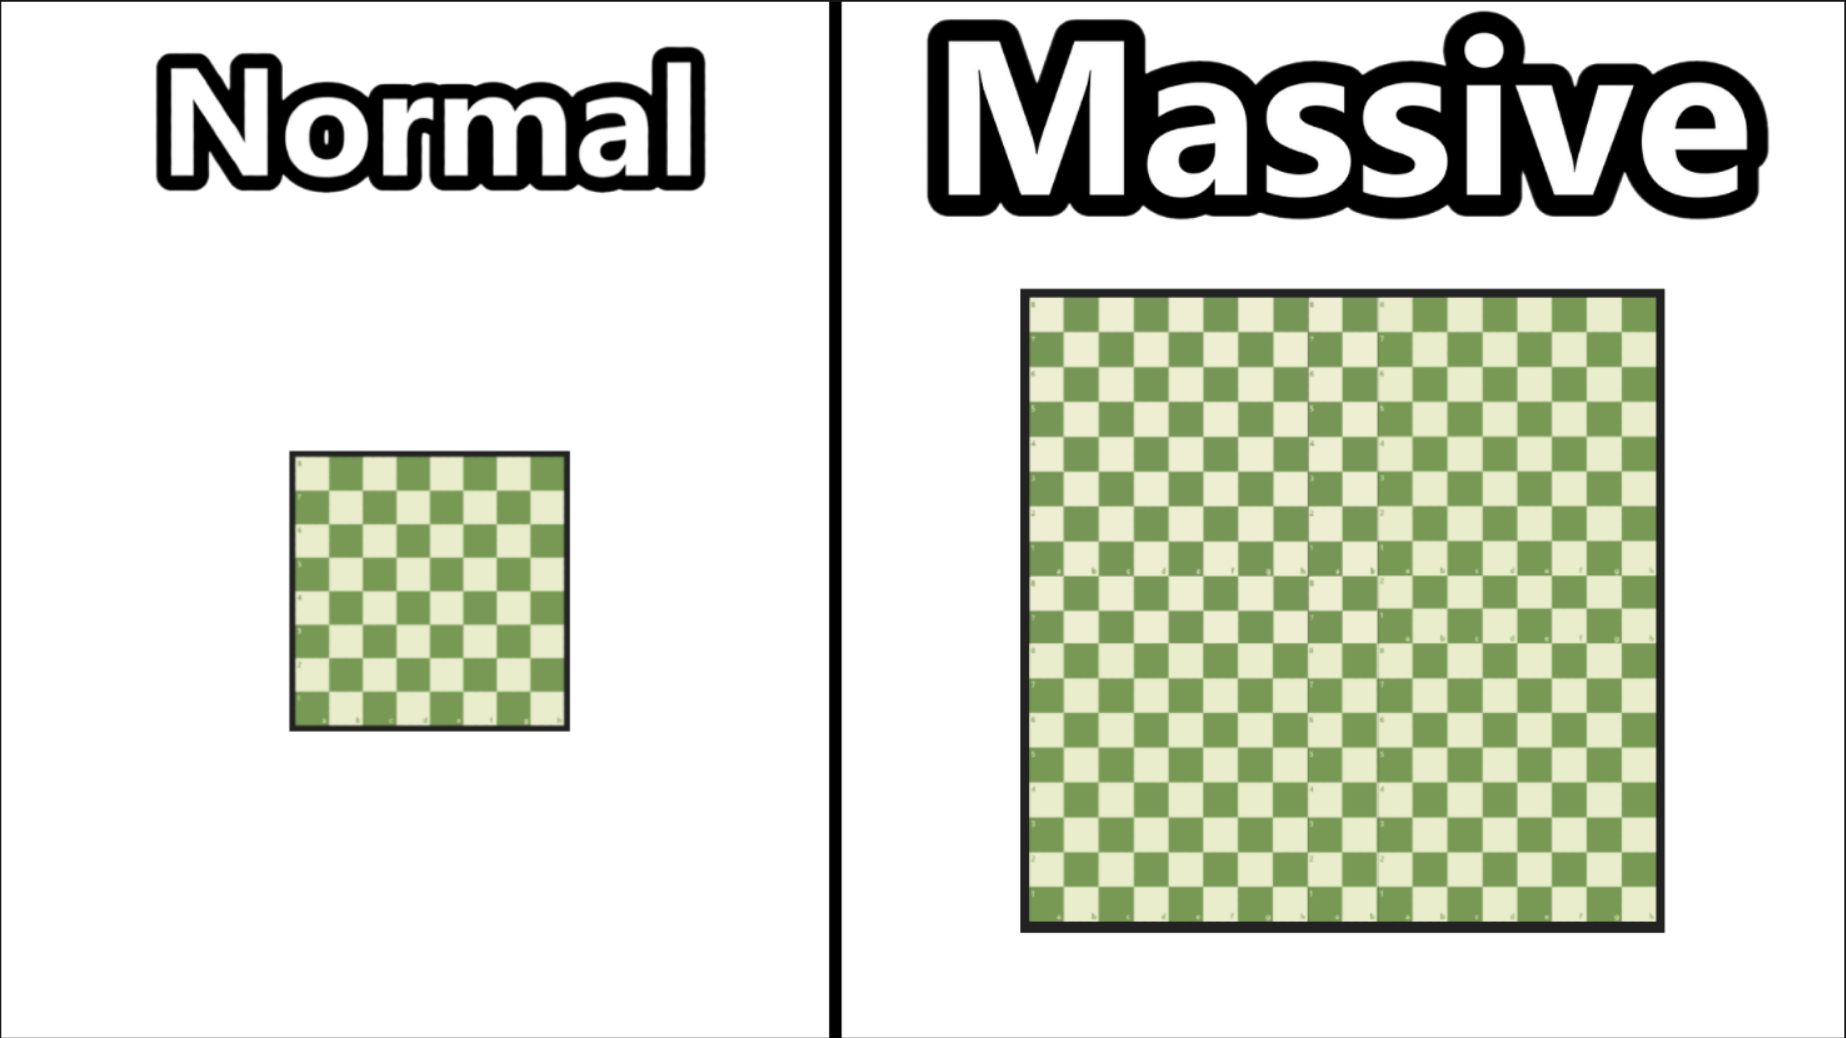 Massive Chess